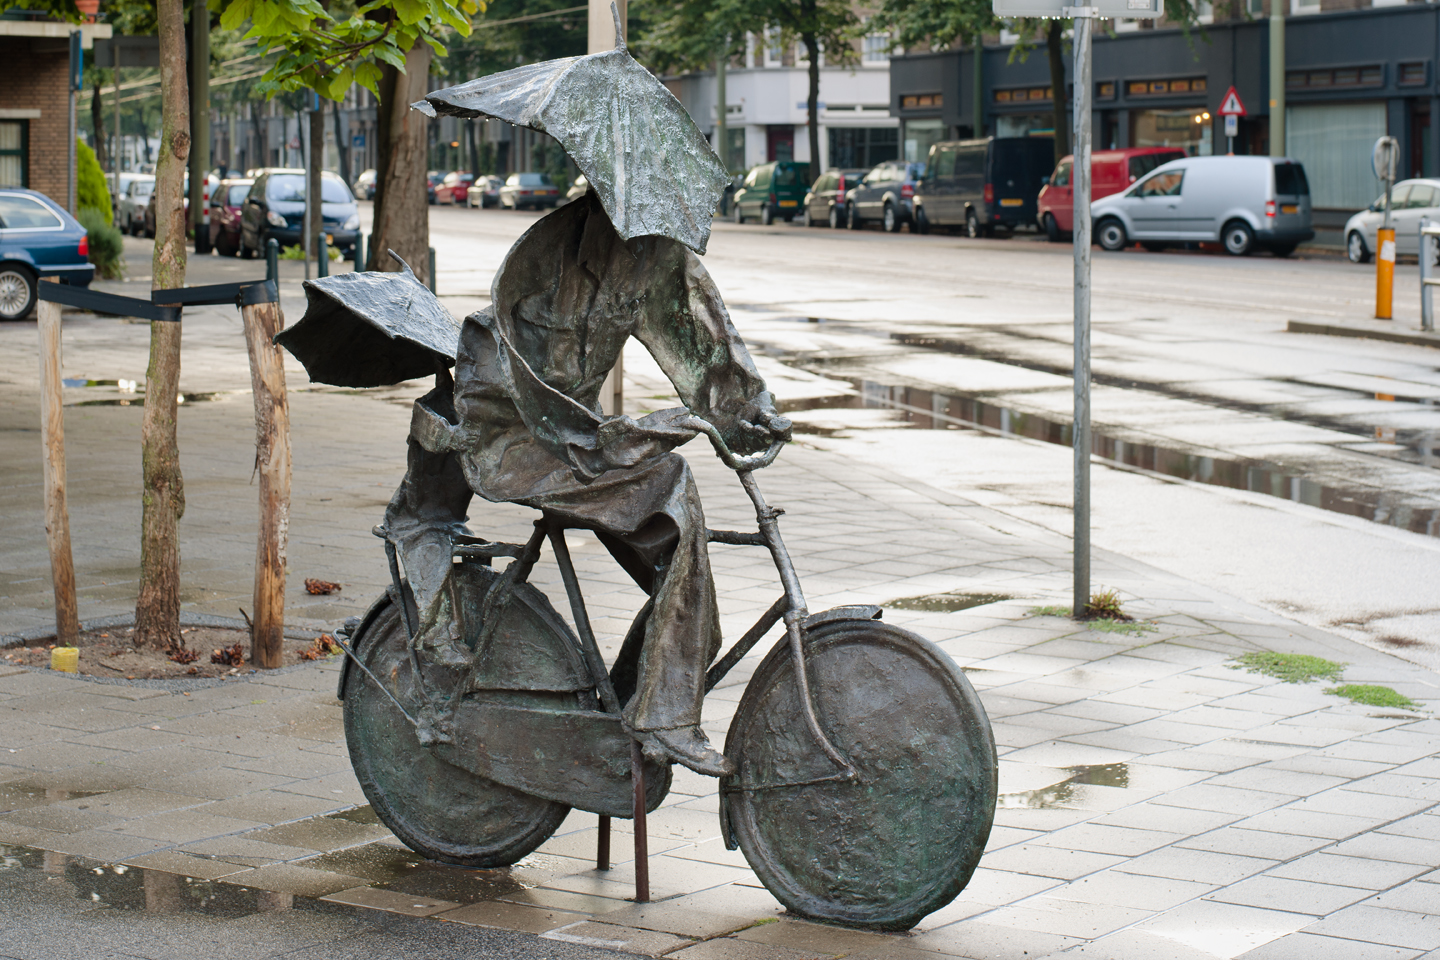 hervorming zak plotseling Ode aan de fiets - Buitenkunst Den Haag - Buitenkunst Den Haag